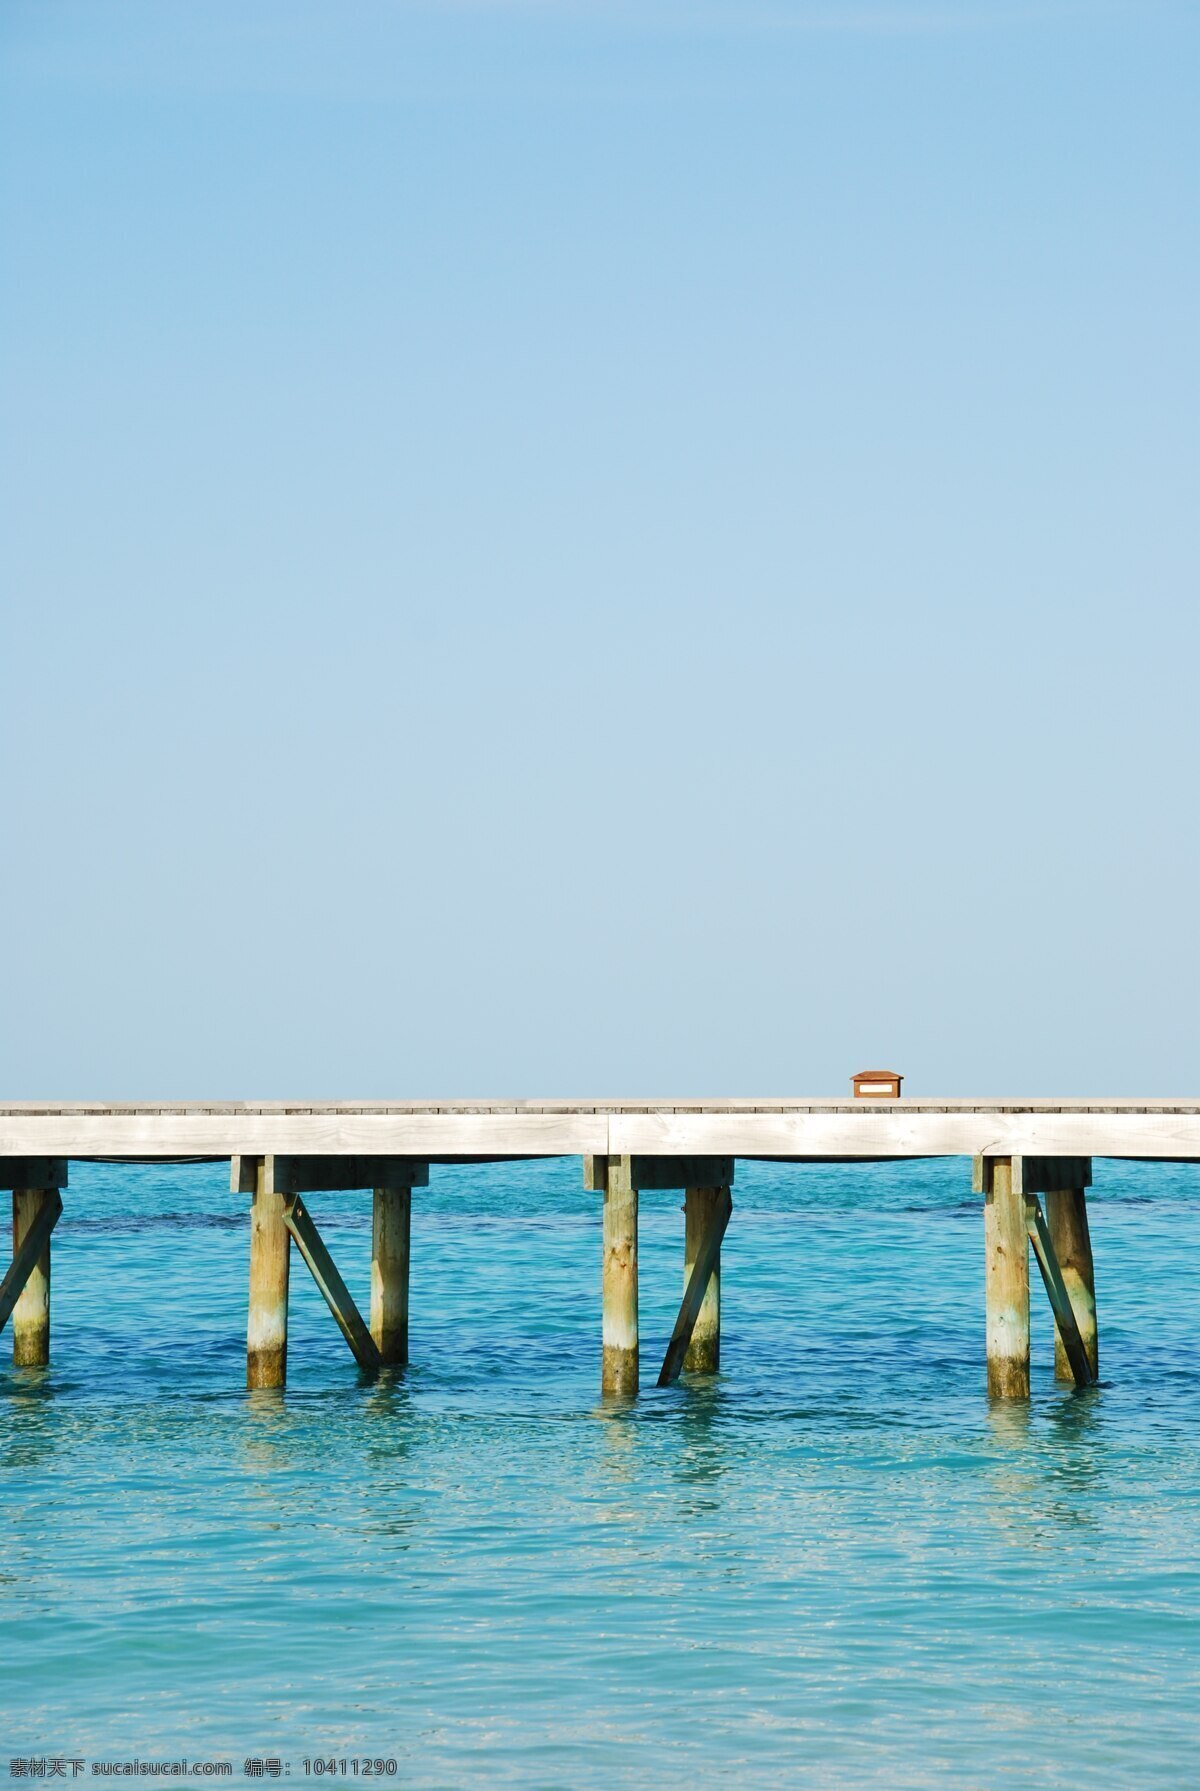 一个 美丽 马尔代夫 海滩 木制 码头 桥 风景 生活 旅游餐饮